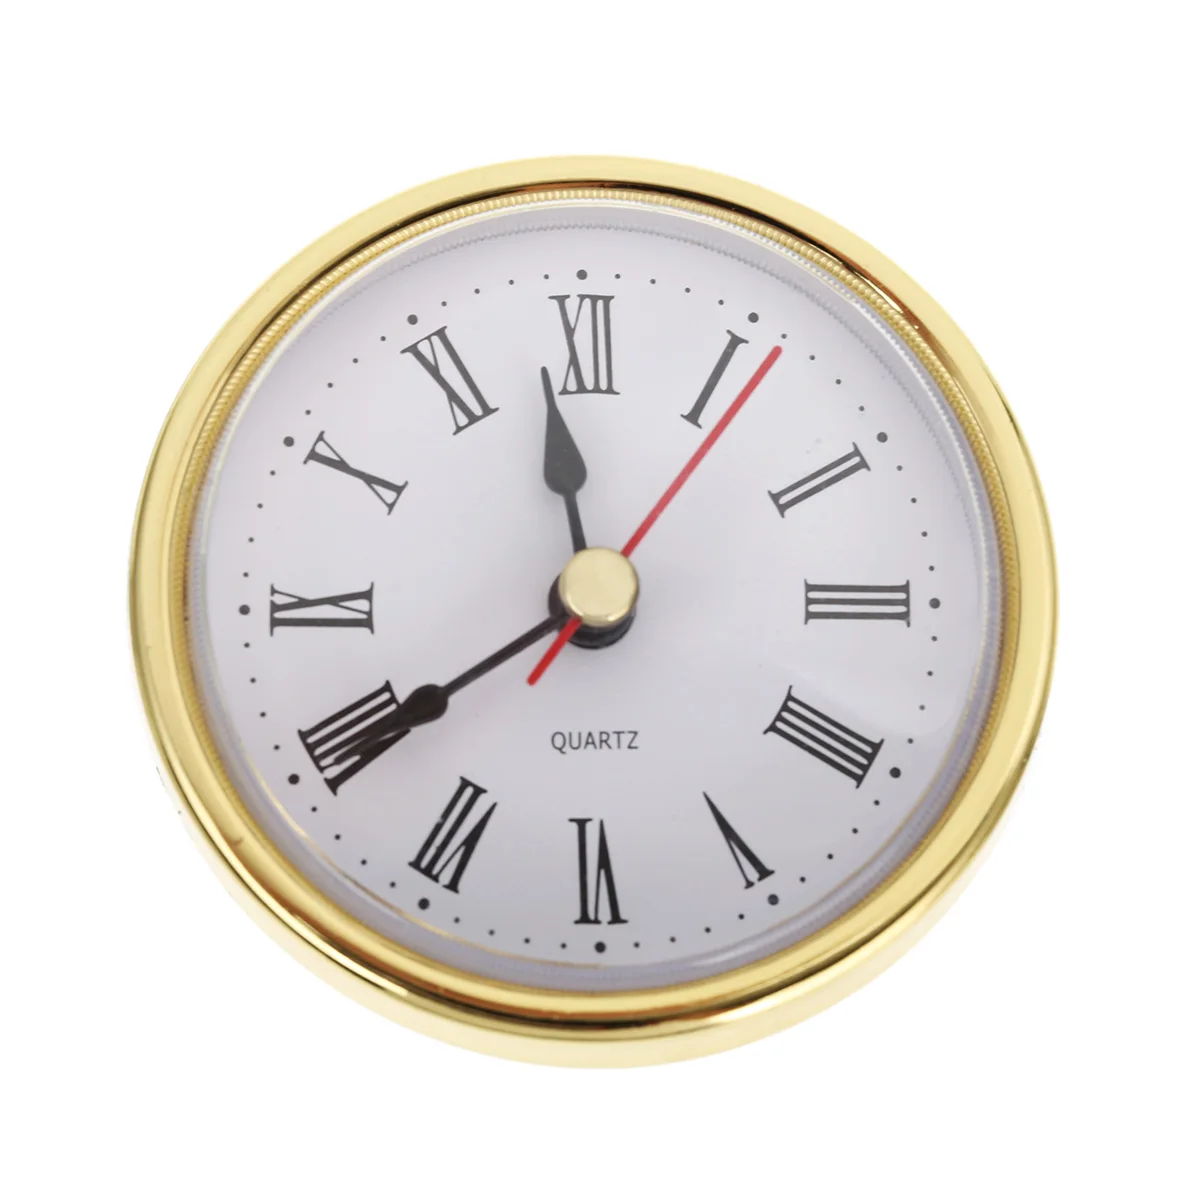 Mayitr Round Wall Clock Head 2-1/2" (65mm) DIY Clock Quartz Movement Insert Roman Numeral Tools Accessories